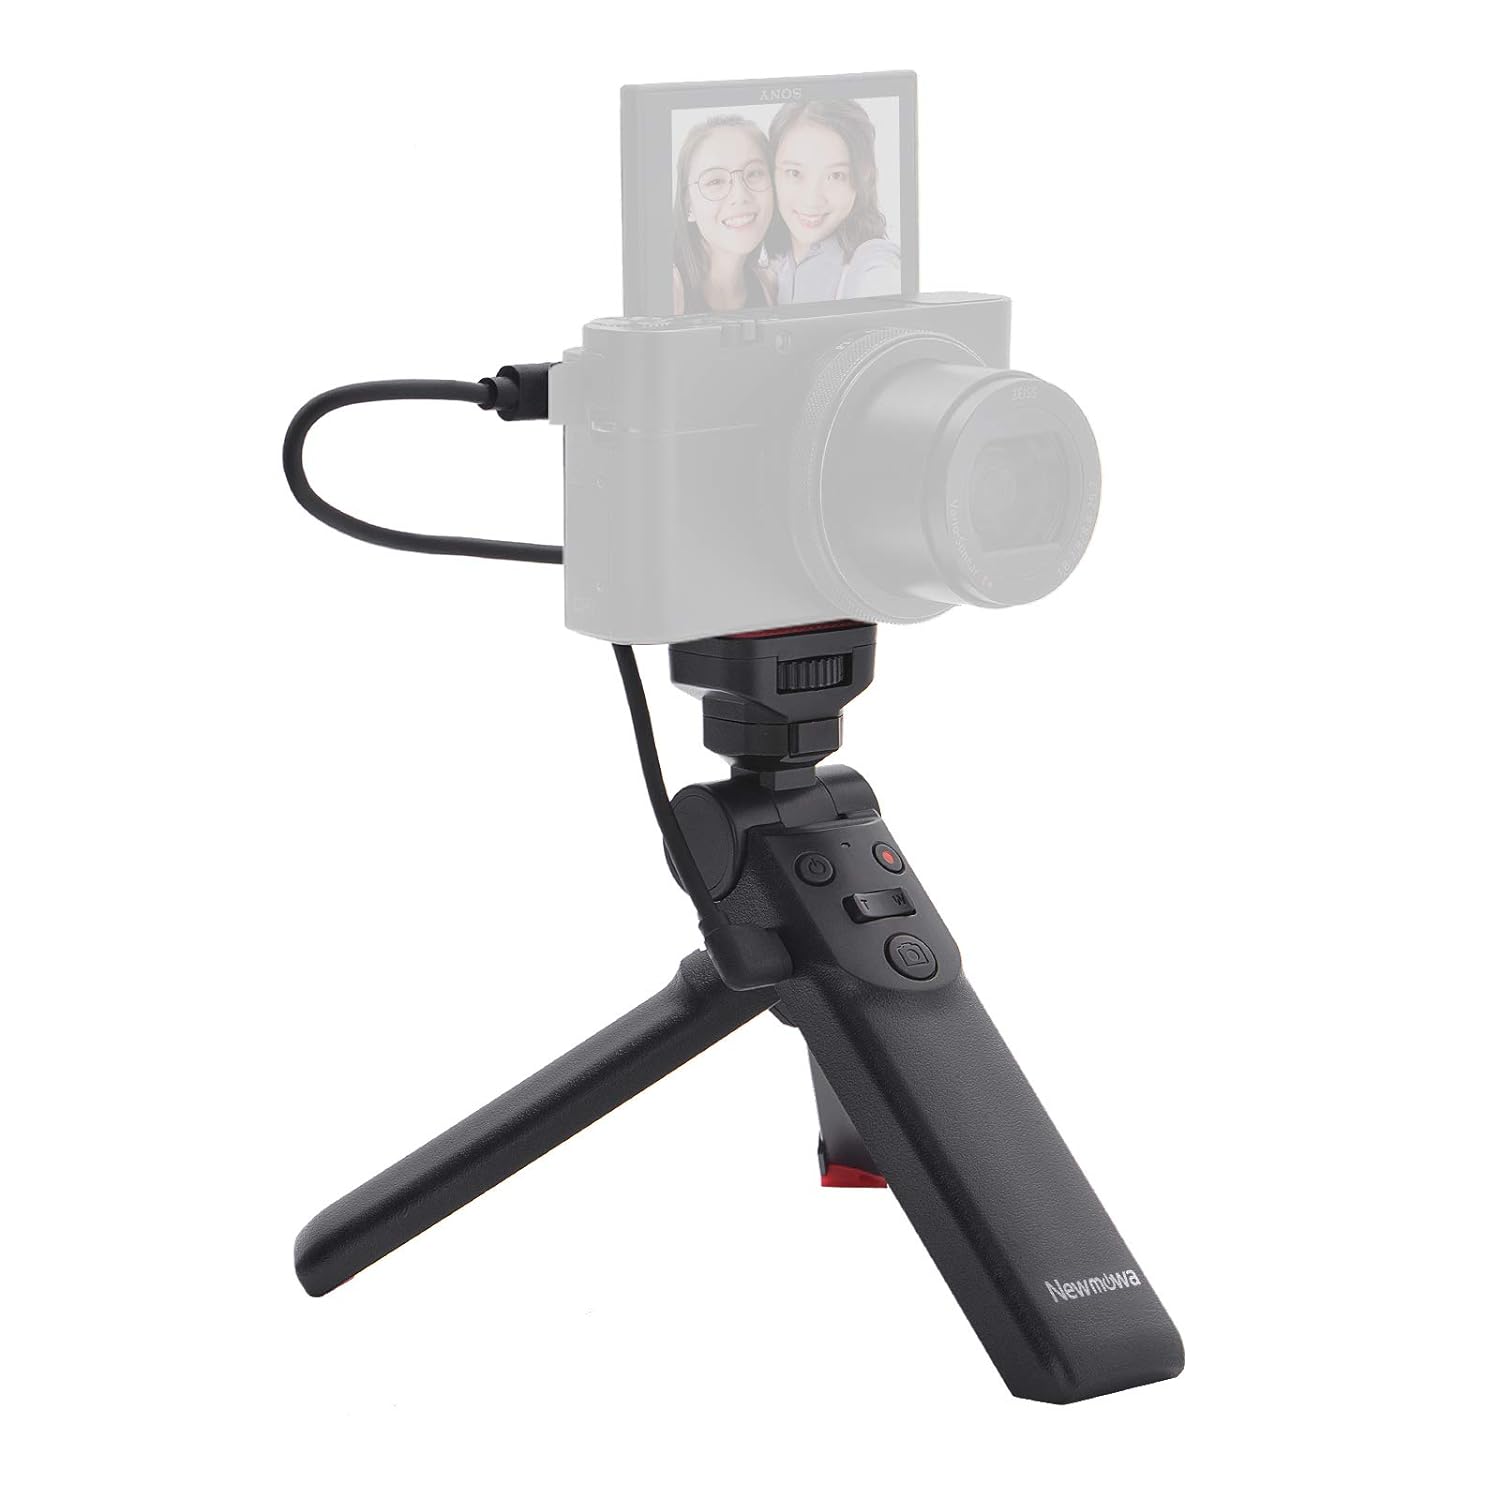 Newmowa Mini Shooting Grip vlog Camera Grip for Sony Vlogger Grip for Sony ZV1 RX100 VII M1 M2 M3 M4 M5 M6 M7 A6000 a6100 a6300 A6400 A6500 A6600, Black